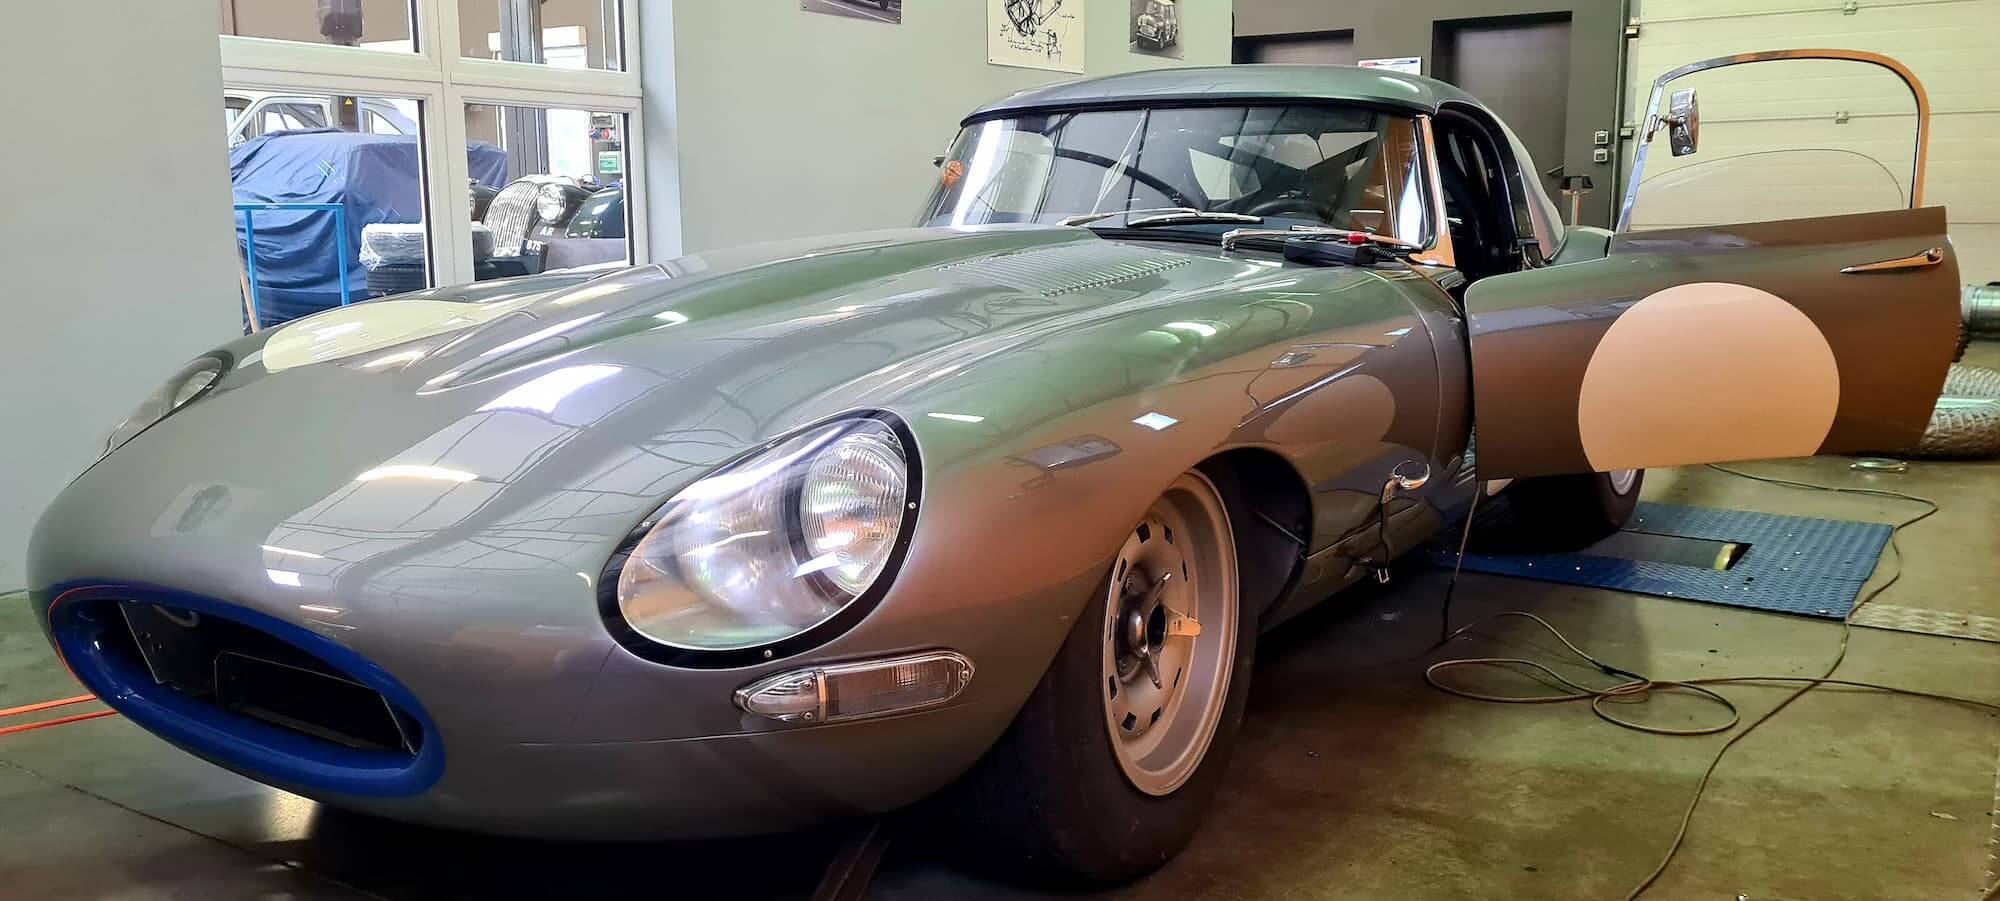 Garage des Damiers - Banc de puissance - Rotronics - Réglage moteur - Historic racing - Vintage racing - Jaguar Type E - British racing - Le Mans Classic